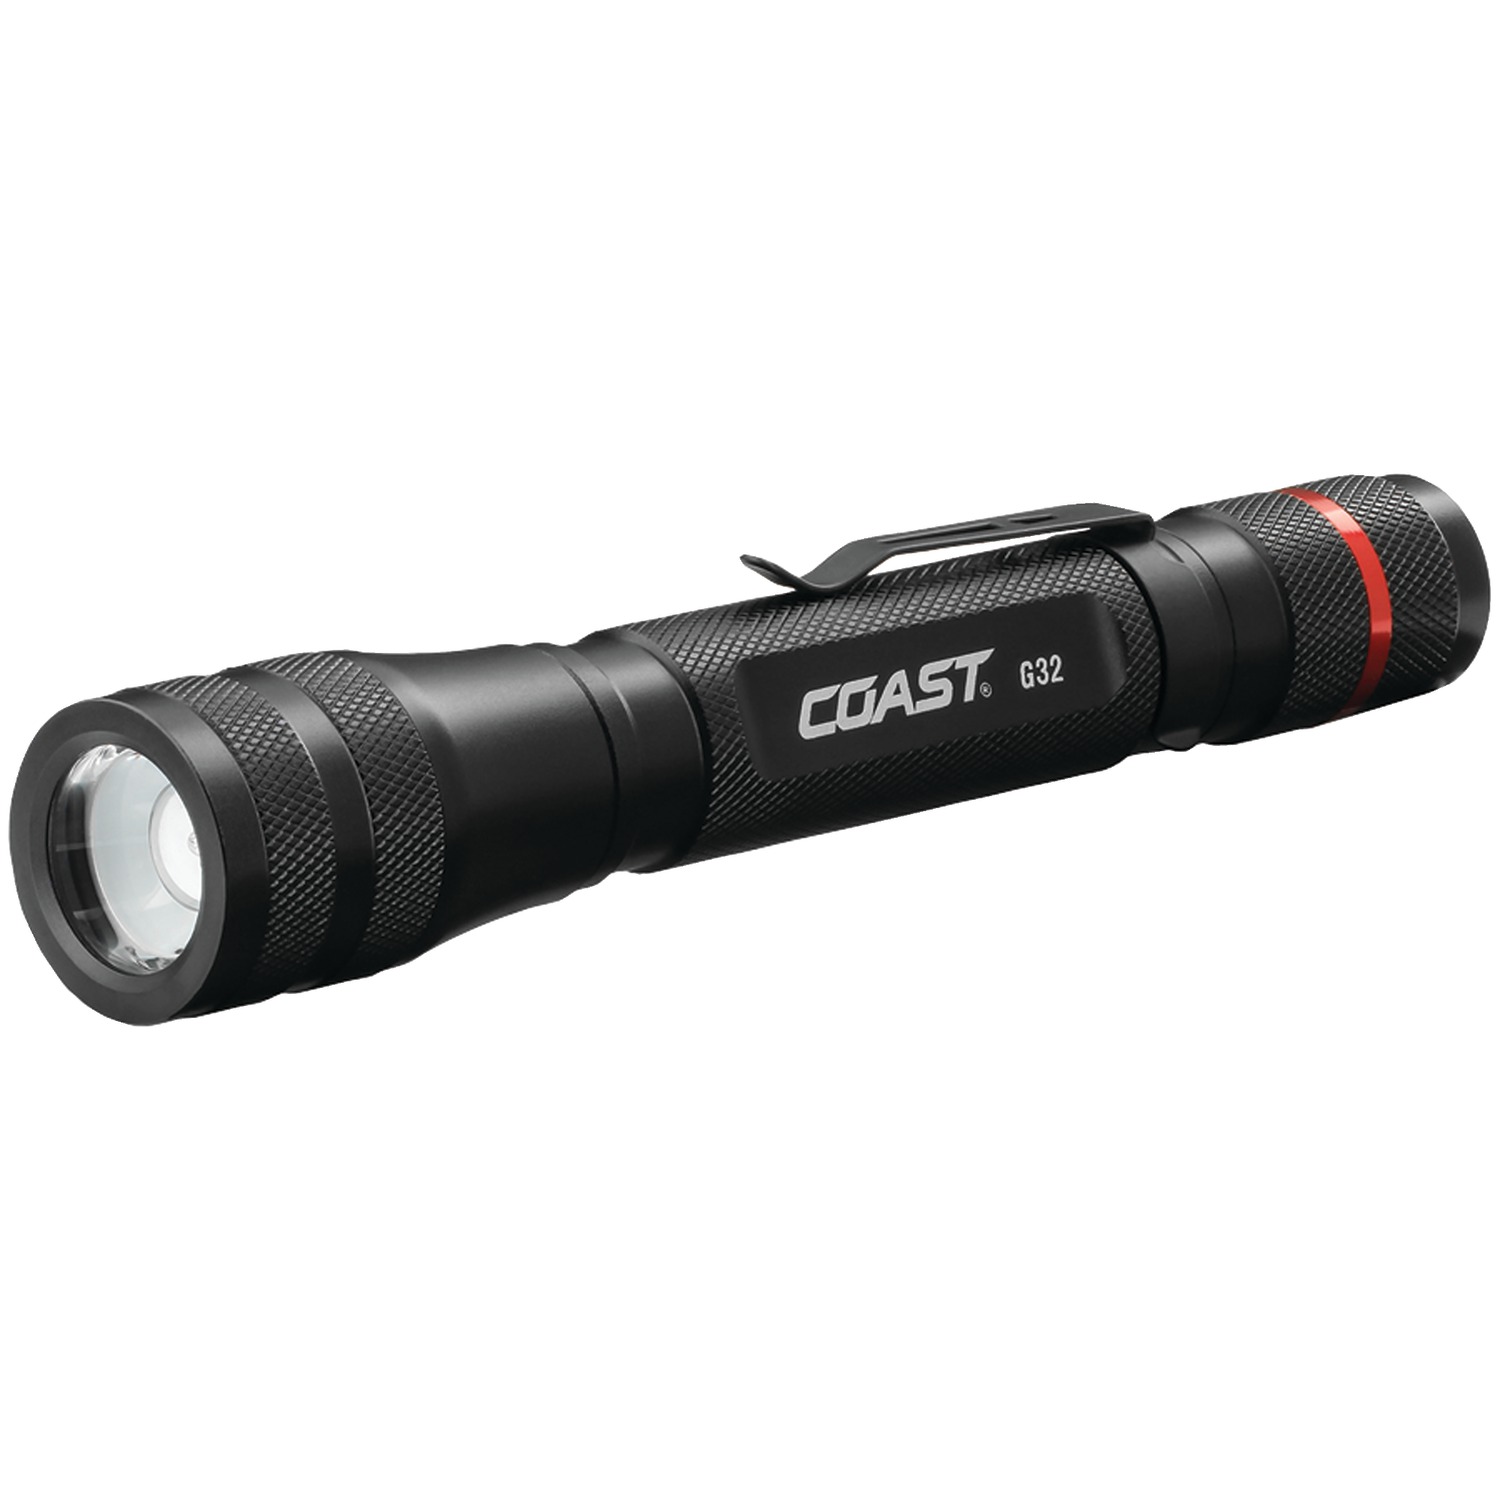 G32 Series 20484 Flashlight, AA Battery, Alkaline Battery, 355 Lumens, 433 ft Beam Distance, 255 min Run Time